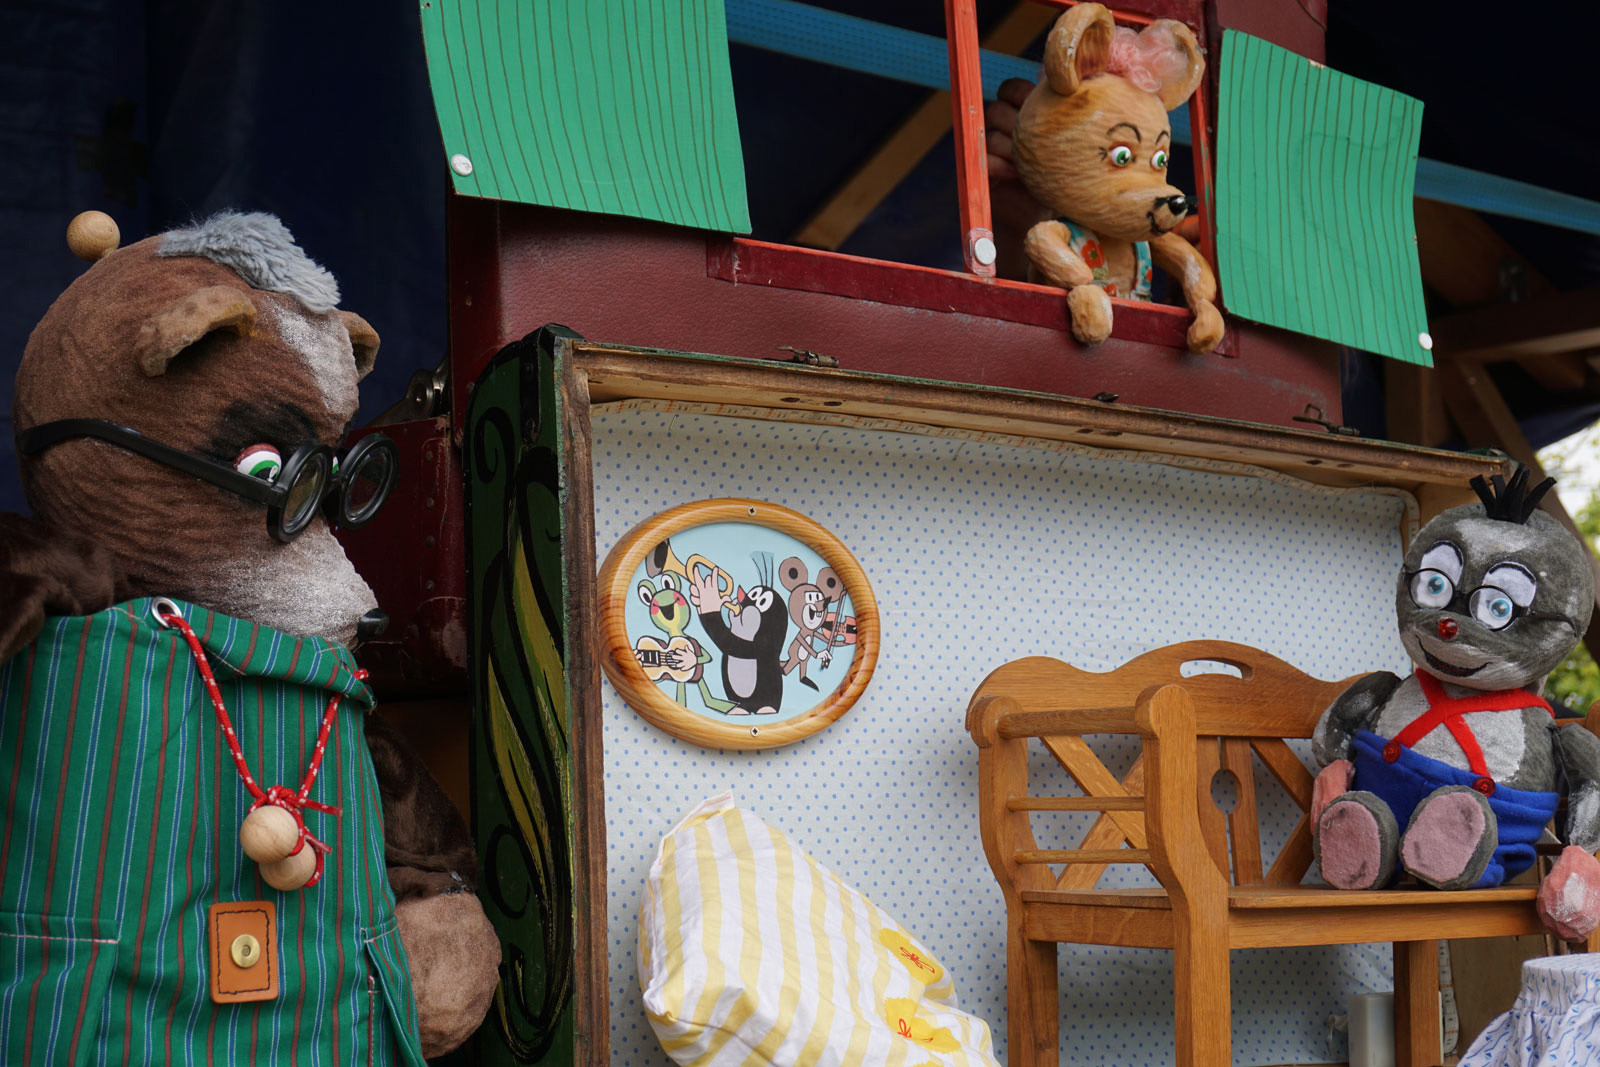 Foto: Puppenspiel "Der Maulwurf und seine Freunde". Fotoautor: Figurentheater Schnuppe, Gingst